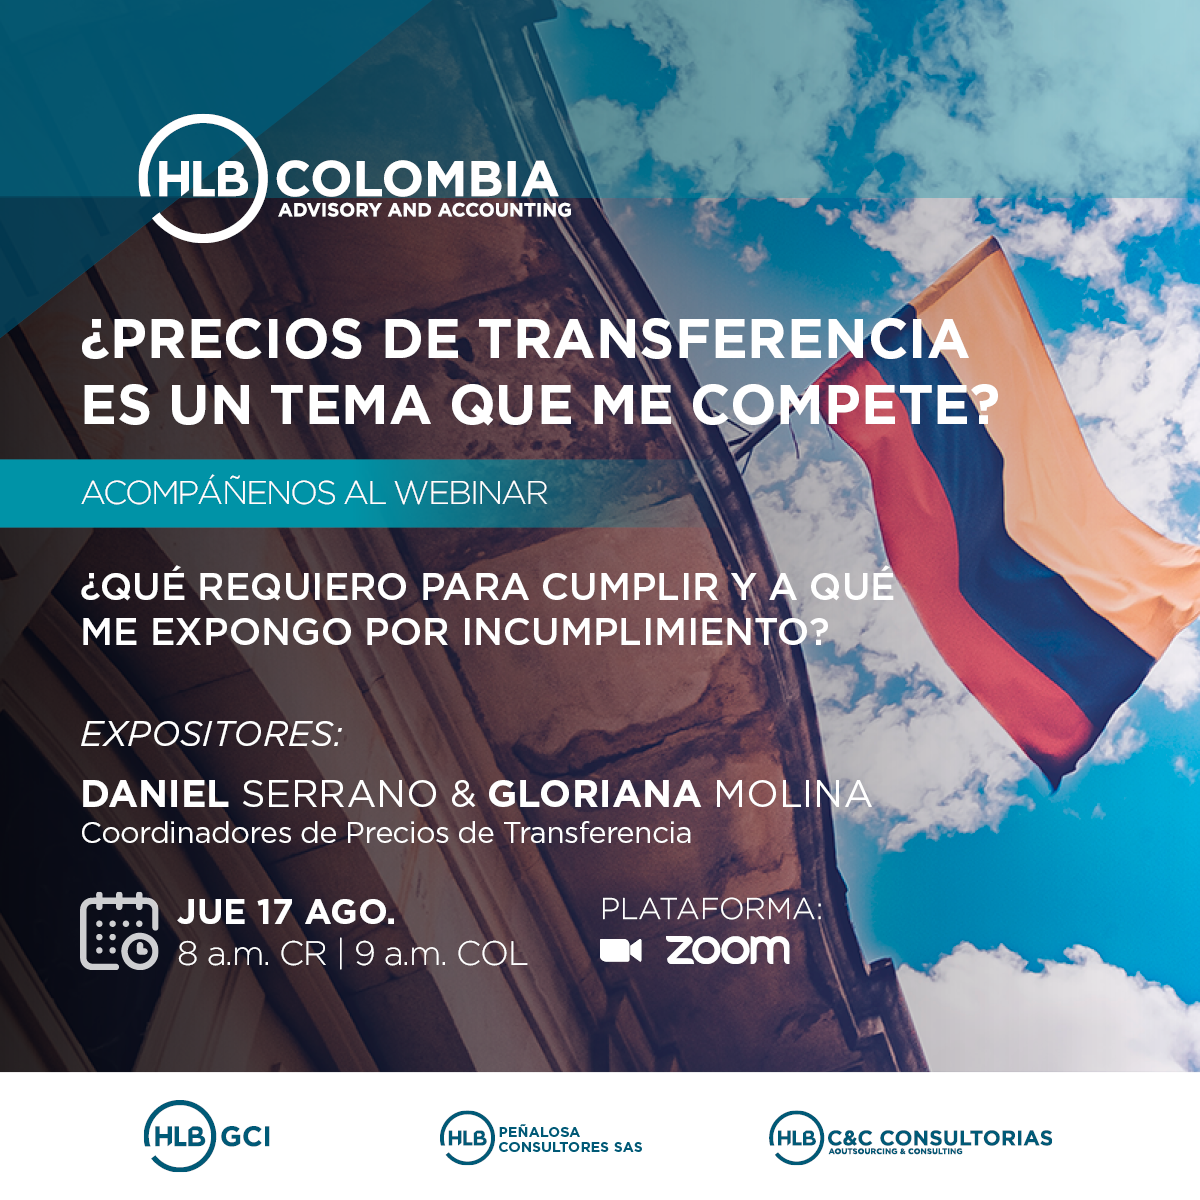 Featured image for “Webinar: ¿Precios de transferencia es un tema que me compete?”